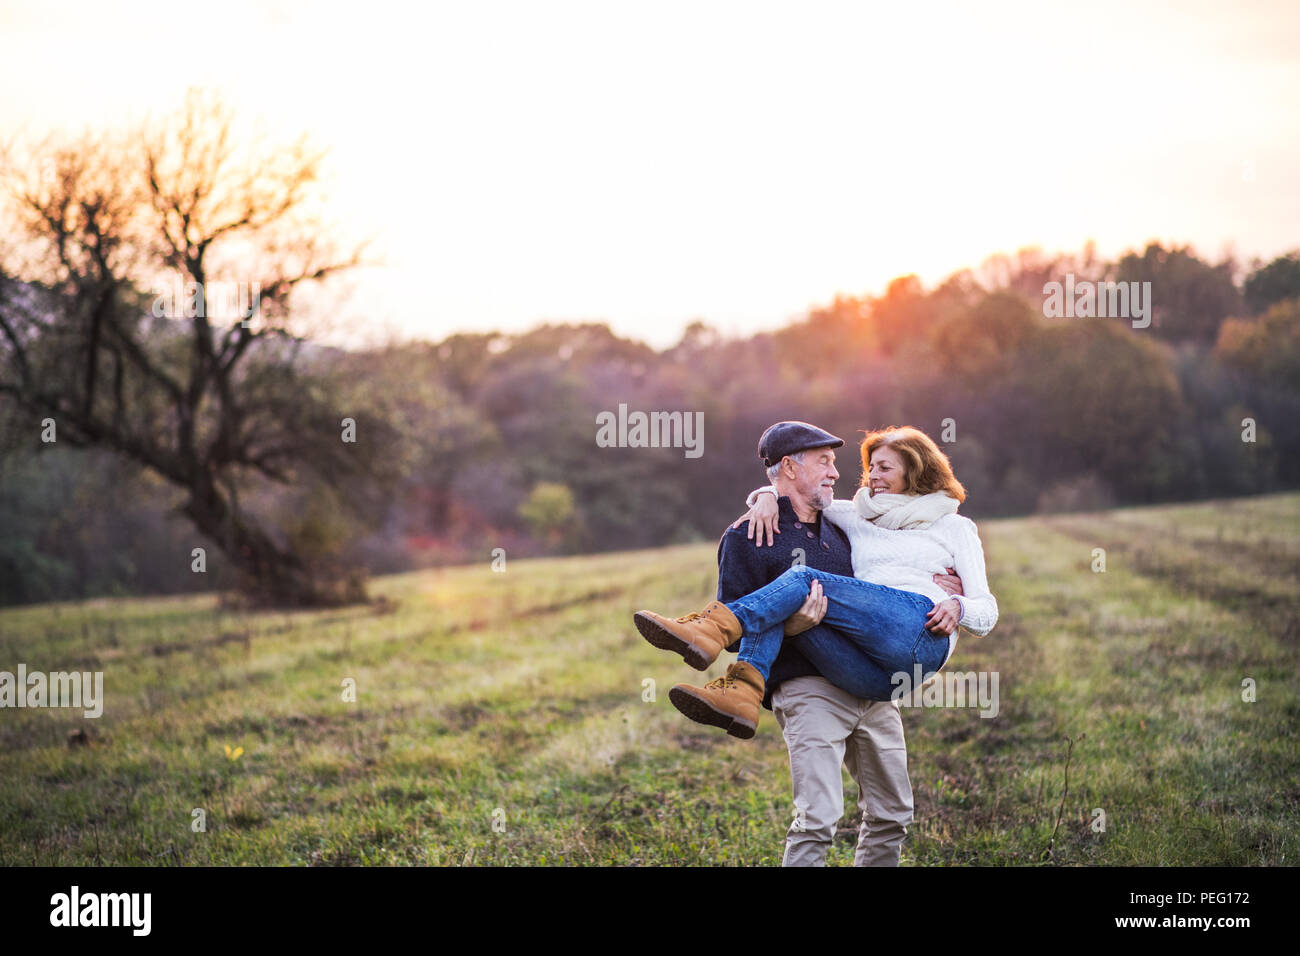 Hauts homme portant une femme dans ses bras dans une nature d'automne au coucher du soleil. Banque D'Images